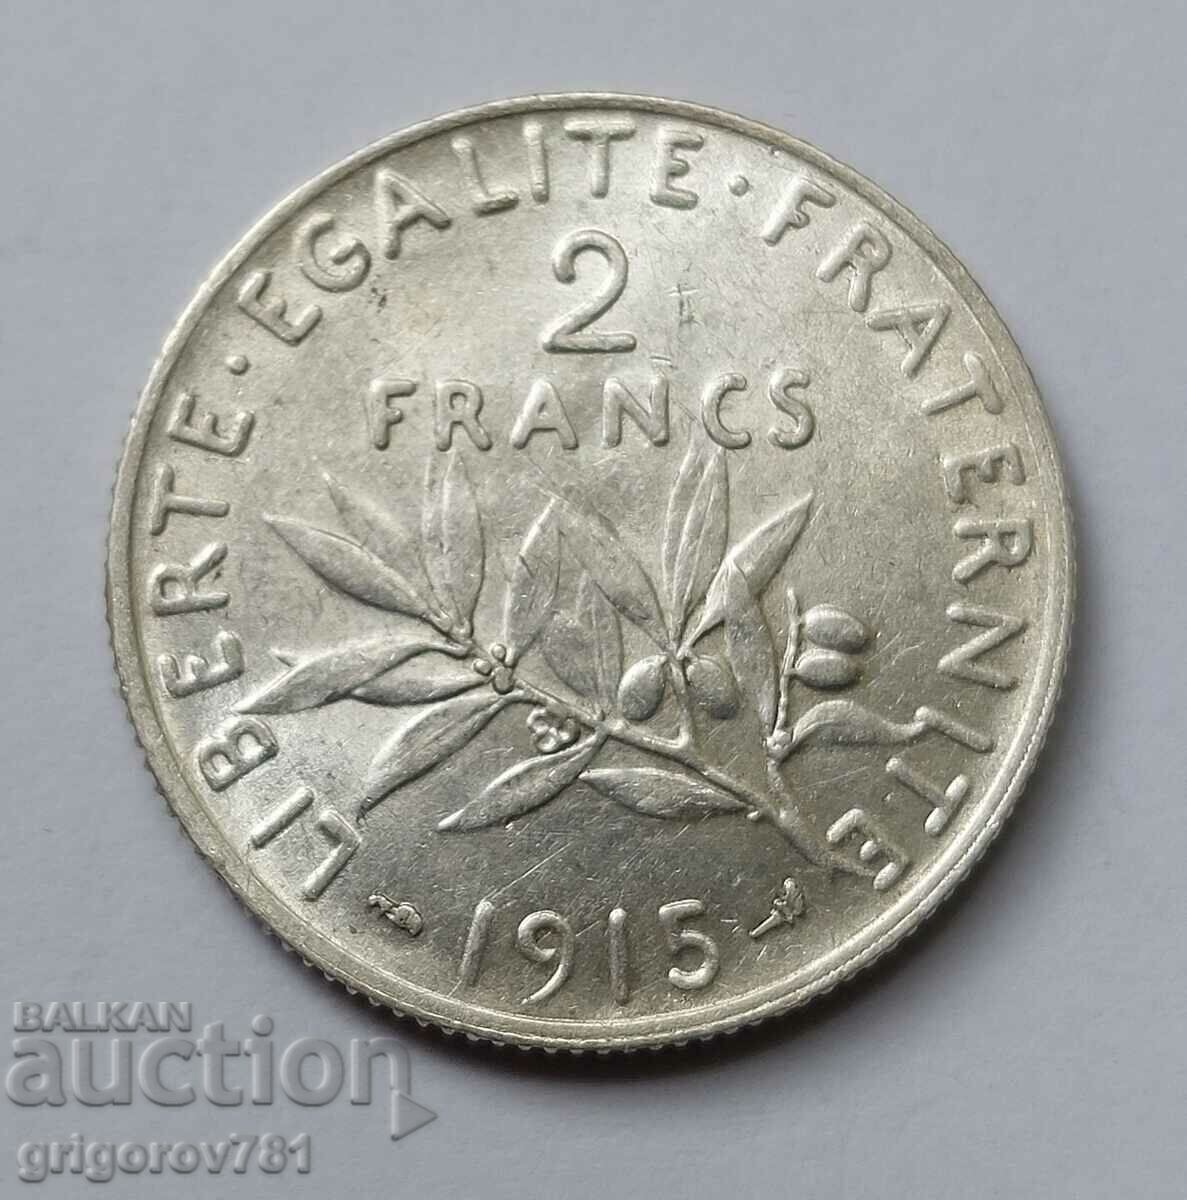 2 Franci Argint Franta 1915 - Moneda de argint #78